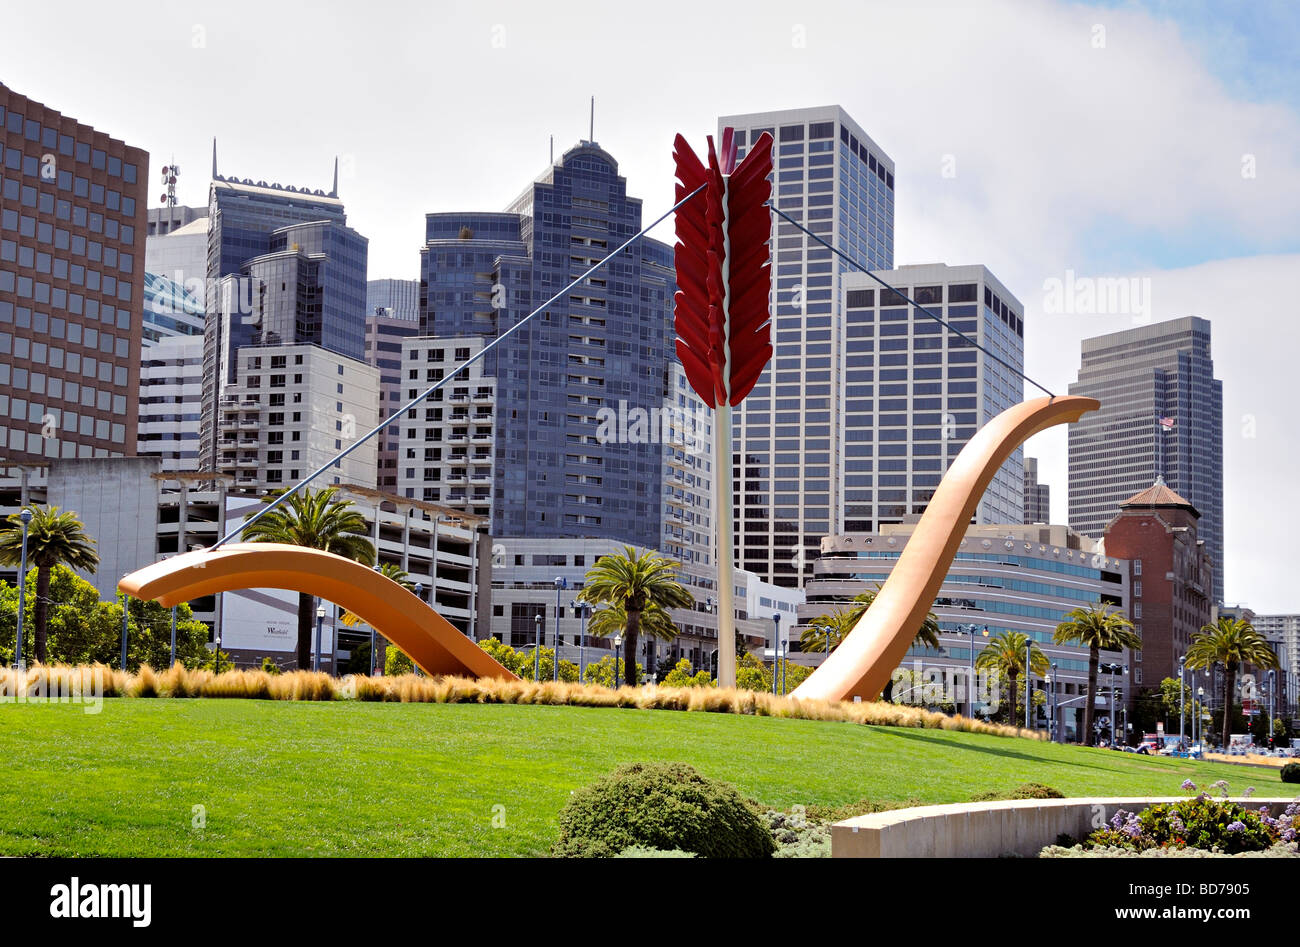 Diese Skulptur namens Cupids Span wurde von Richard Serra entworfen und für den Hauptsitz von The Gap in San Francisco in Auftrag gegeben. Stockfoto